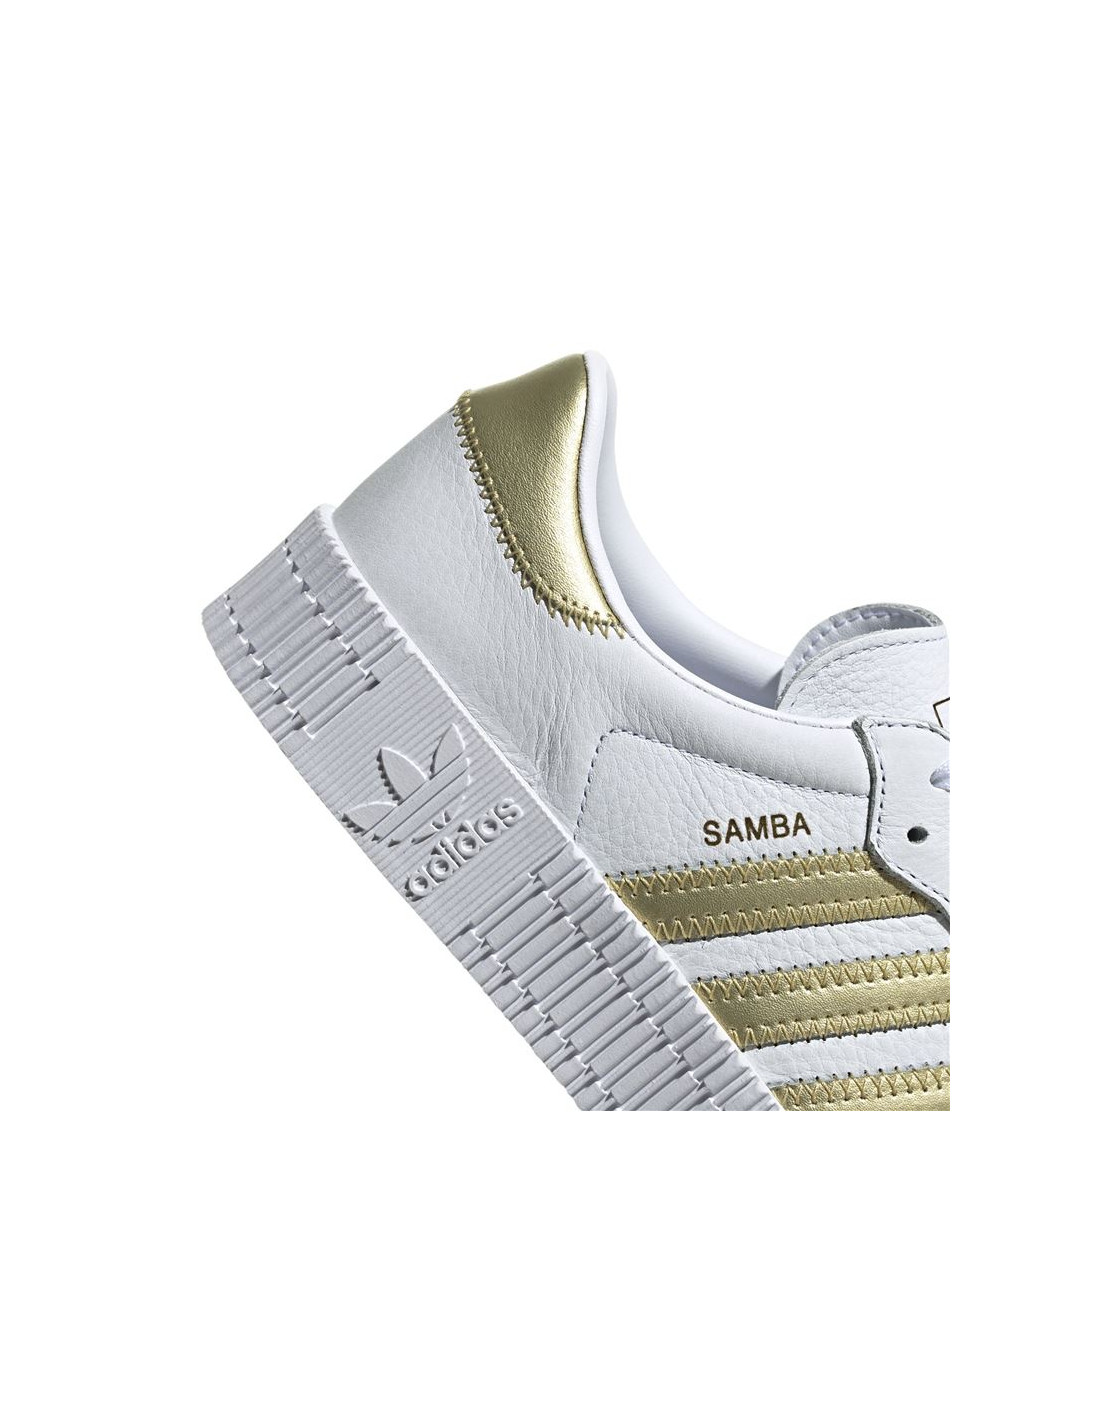 Zapatillas adidas Originals Sambarose Blanco/Dorado Atmosfera Sport©